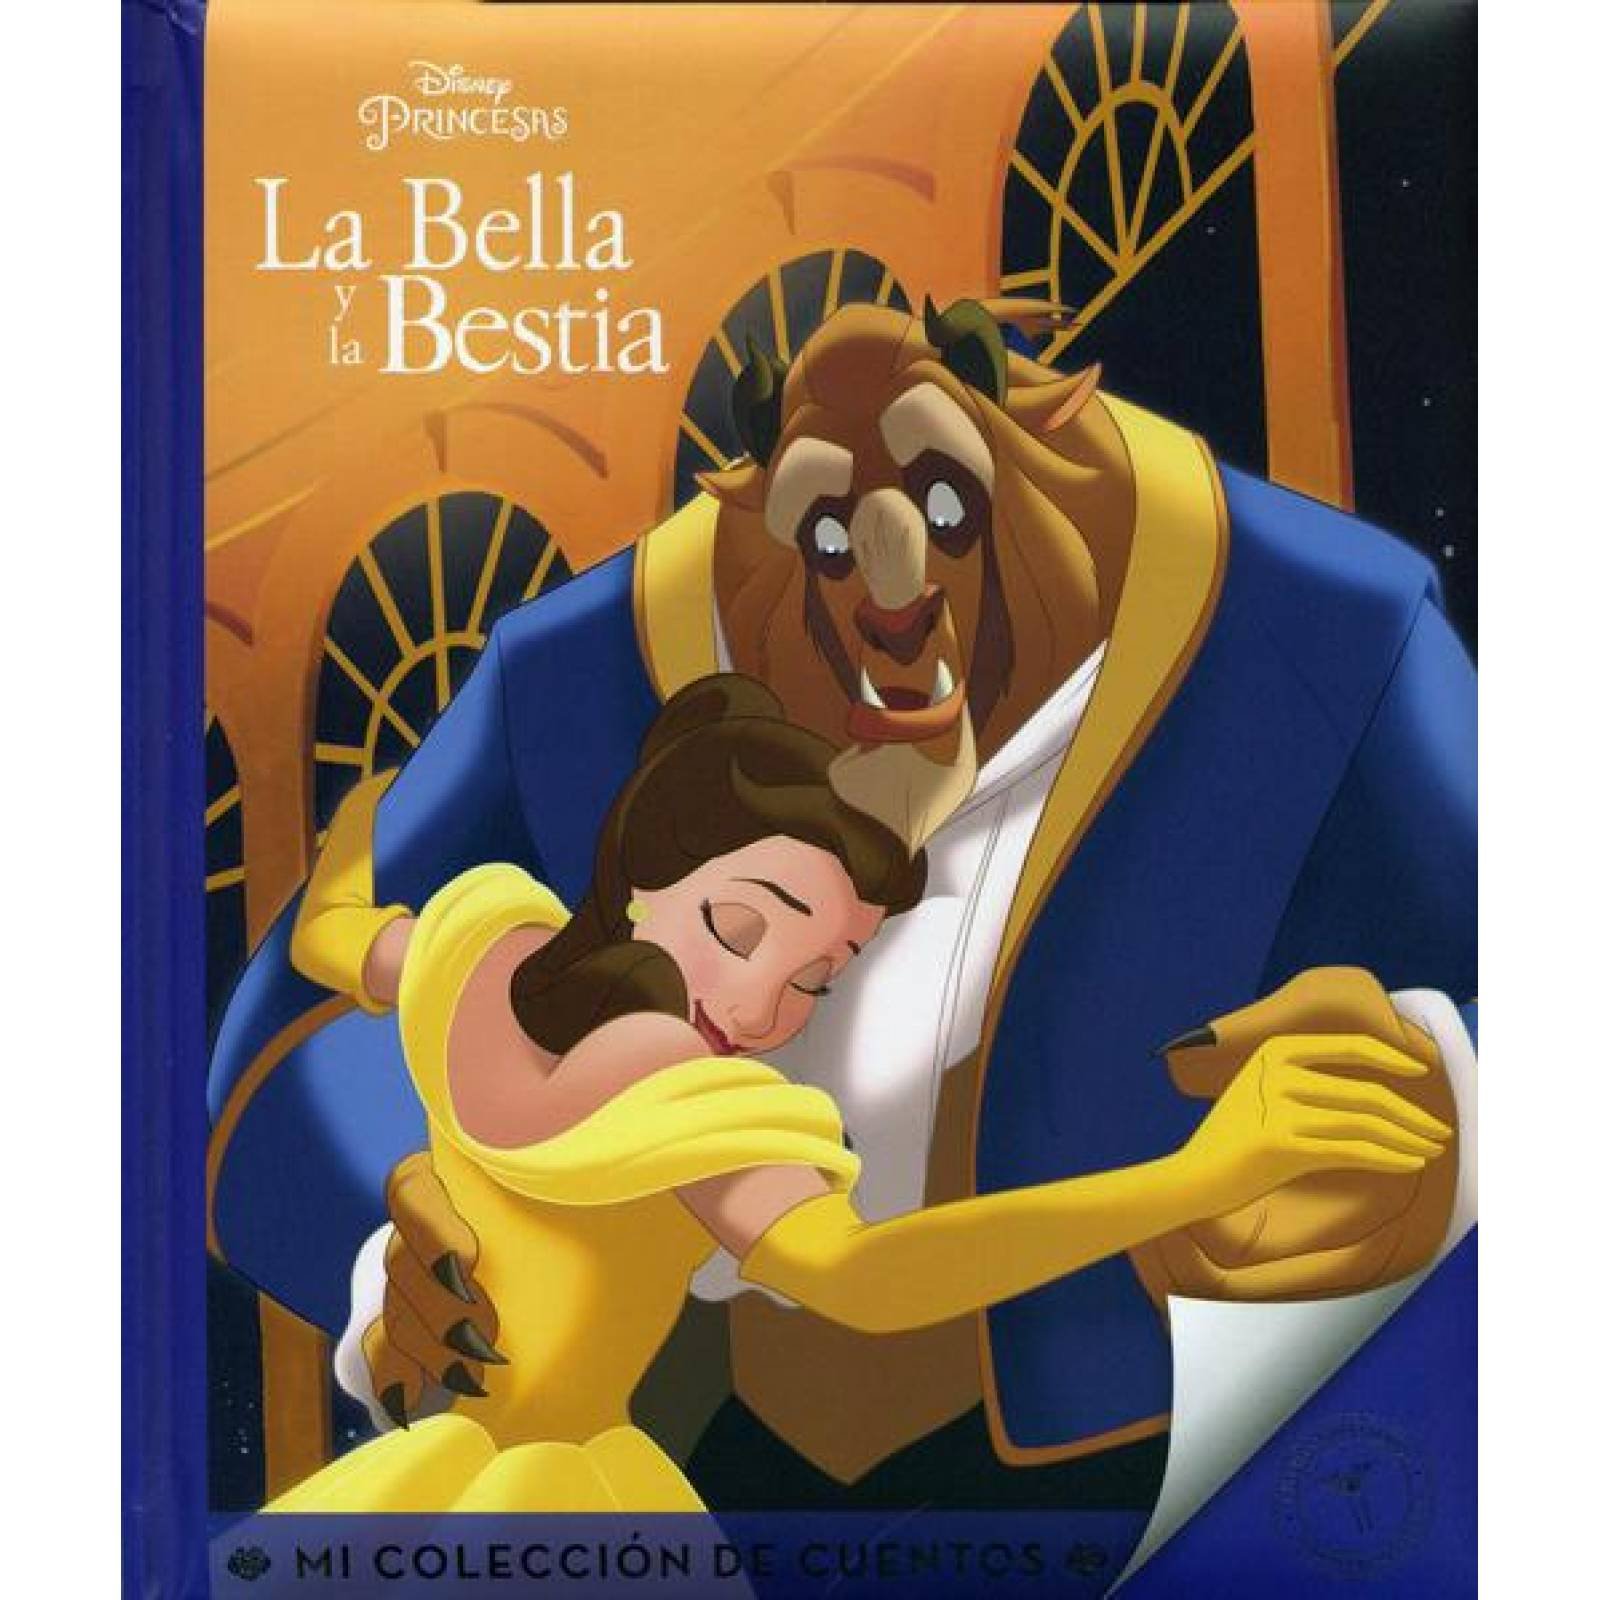 Mi Coleccion De Cuentos: La Bella Y La Bestia 